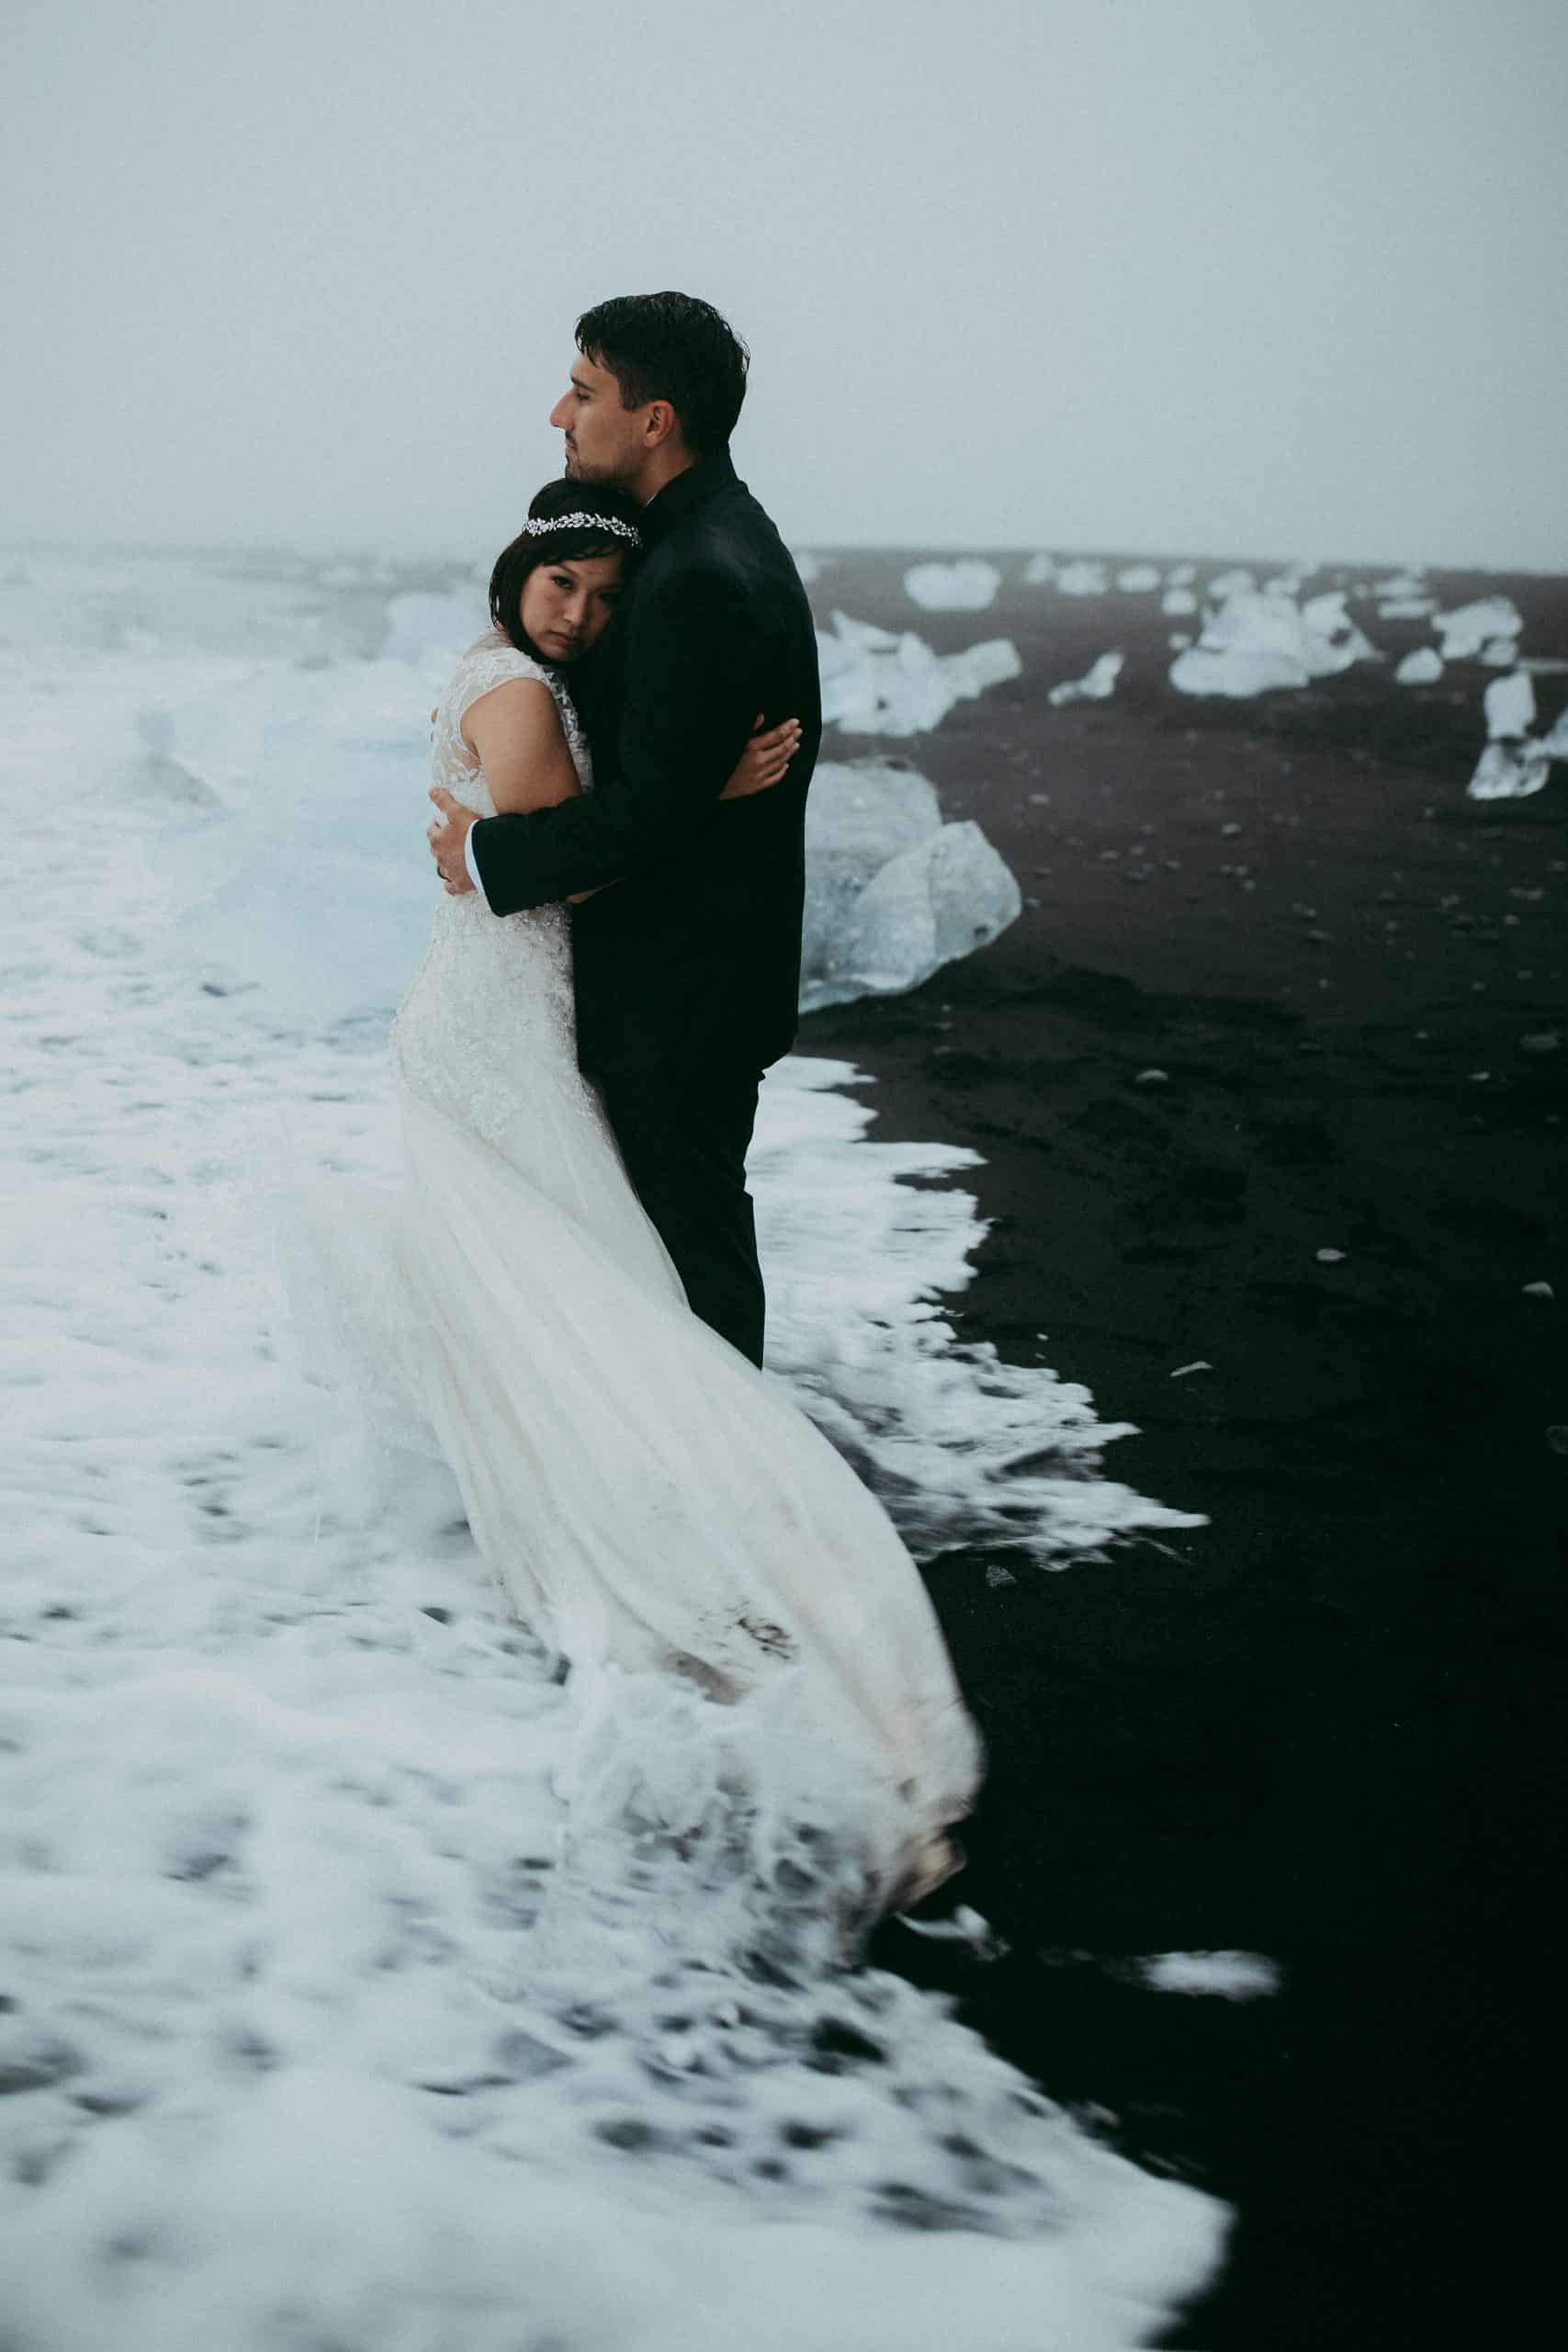 couple elopeing at jokulsarlon iceland diamond beach